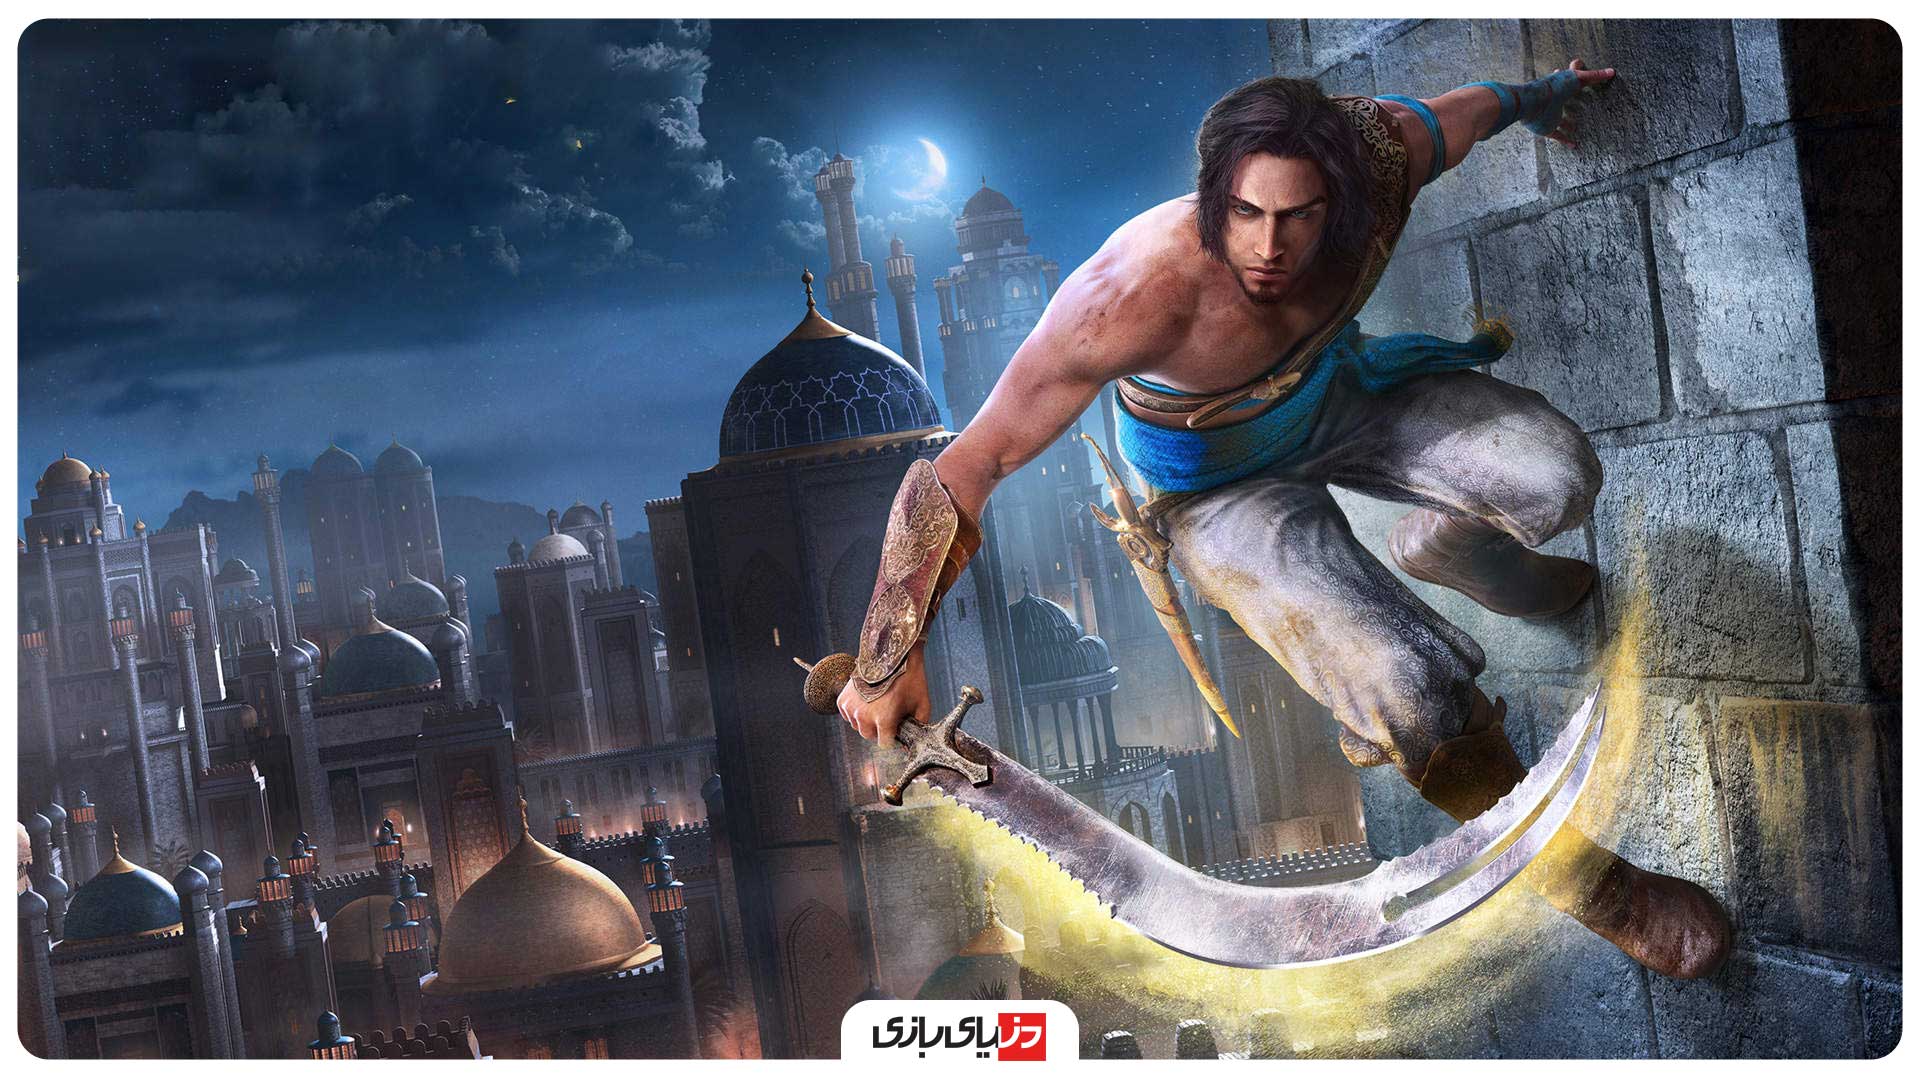 نگاهی به مراسم یوبیسافت فوروارد 2020 - مراسم Ubisoft Forward 2020 - تریلر بازی Prince of Persia: The Sands of Time Remake - معرفی بازی Watch Dogs 3 - تریلر بازی Assassin's Creed Valhalla